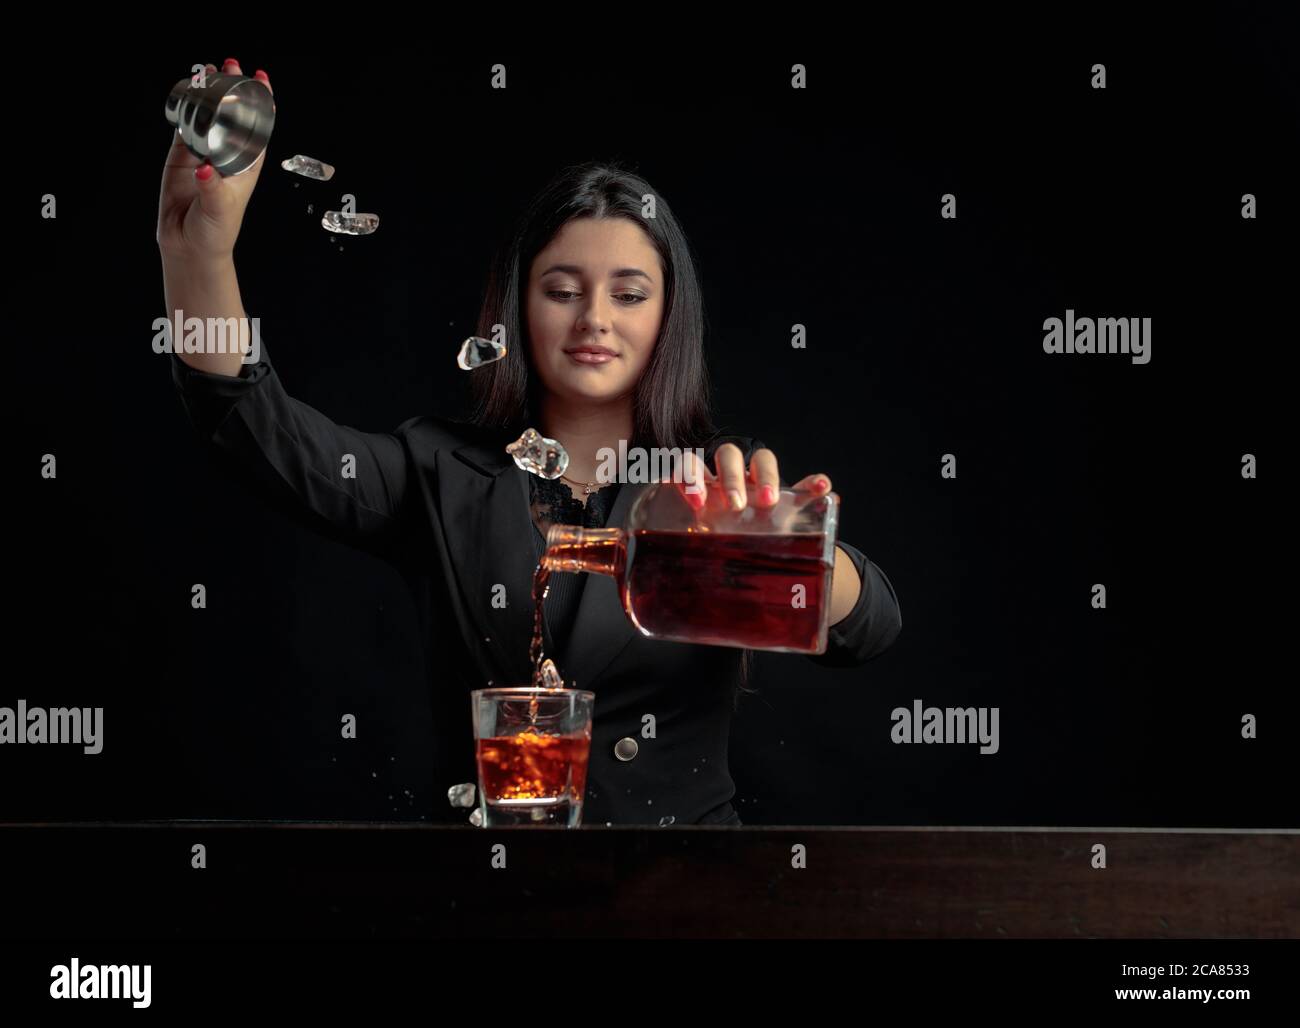 Une belle barman verse une boisson alcoolisée dans un verre et jette des morceaux de glace. Magnifique brunette en noir préparer un cocktail. Copier l'espace. Banque D'Images